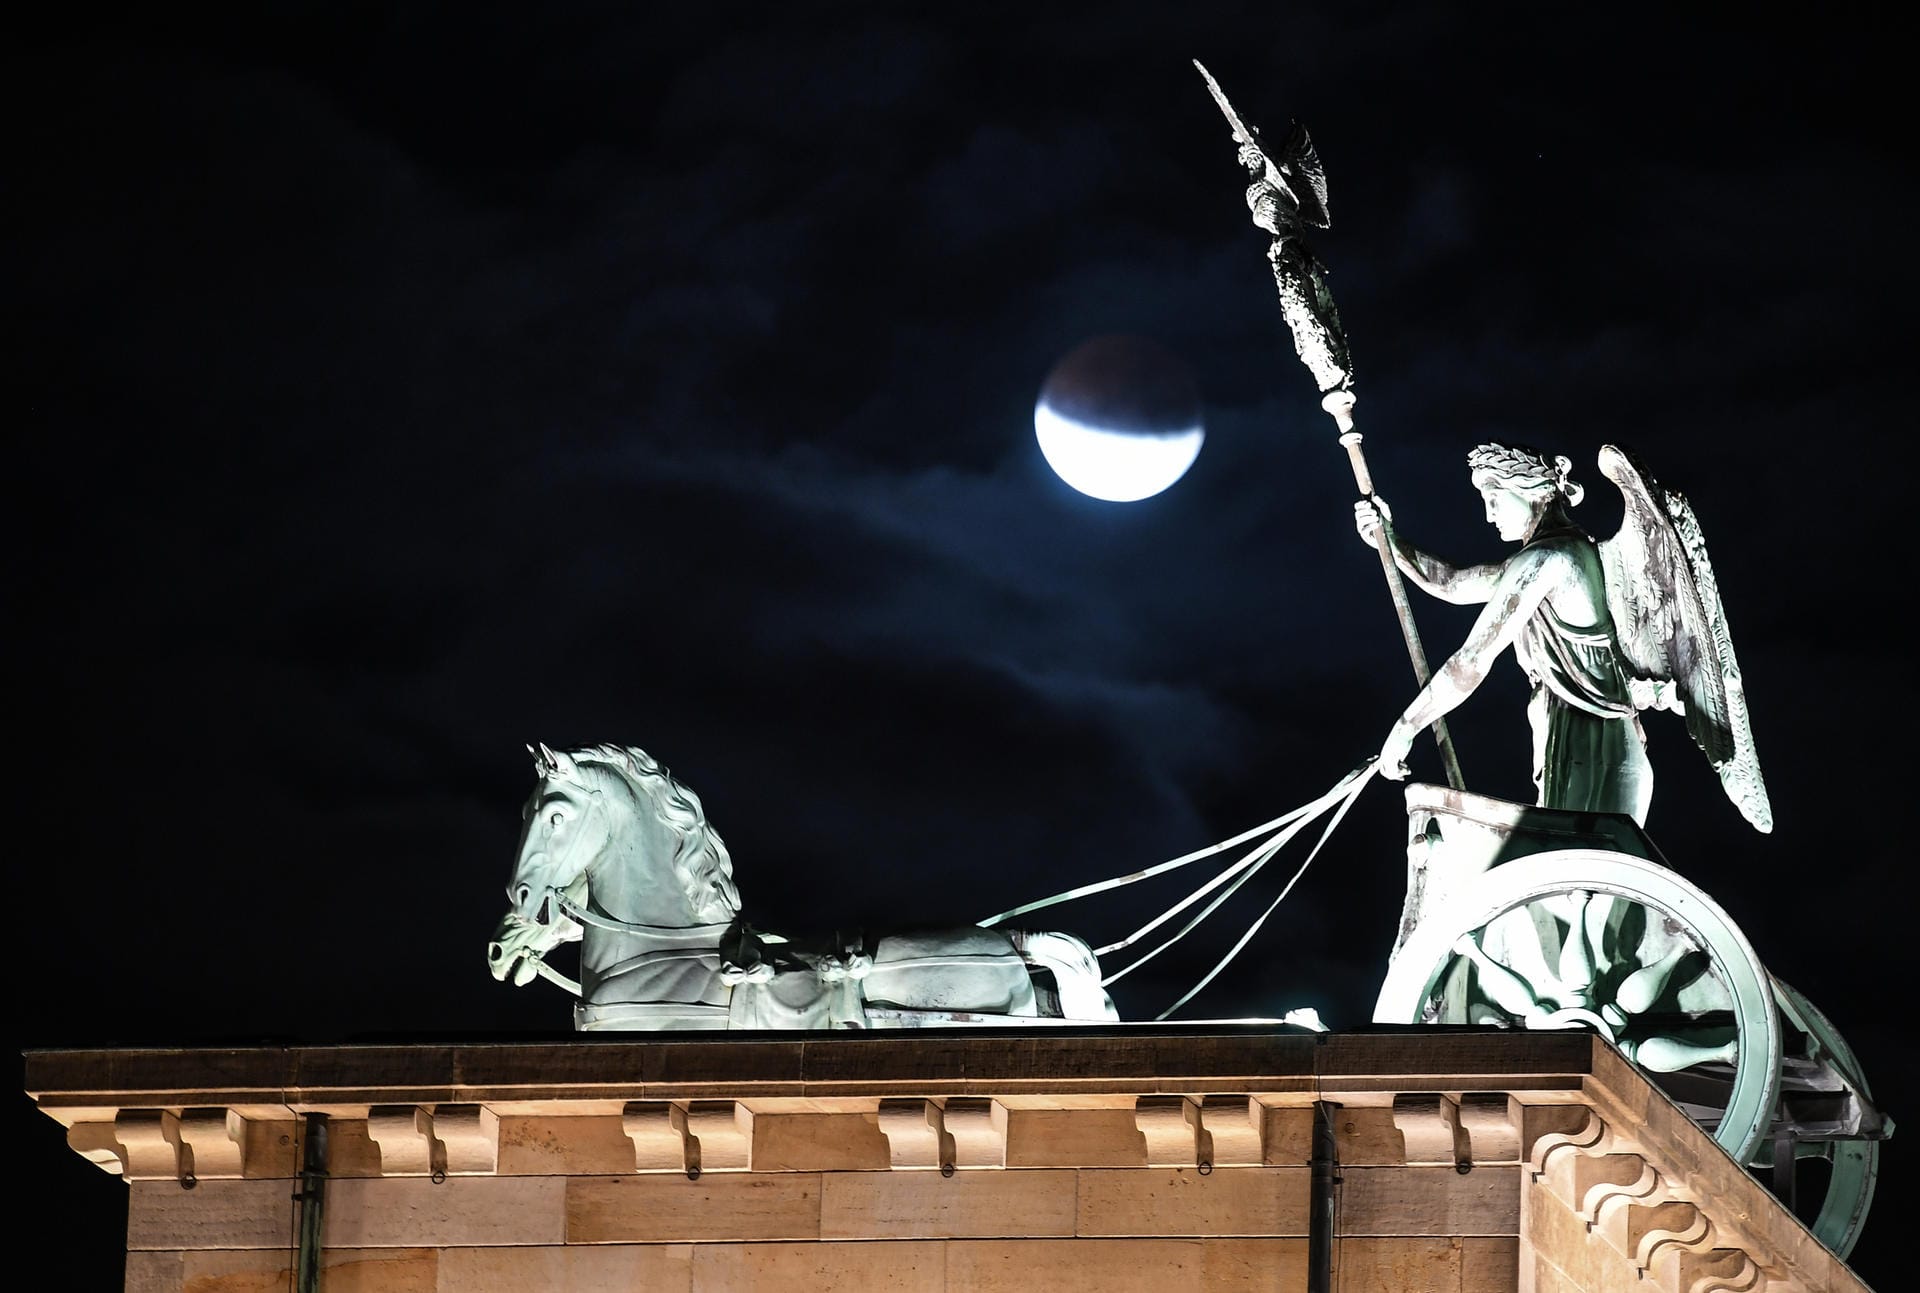 Berlin: Der Mond ist während einer partiellen Mondfinsternis hinter der Quadriga des Brandenburger Tors zu sehen.